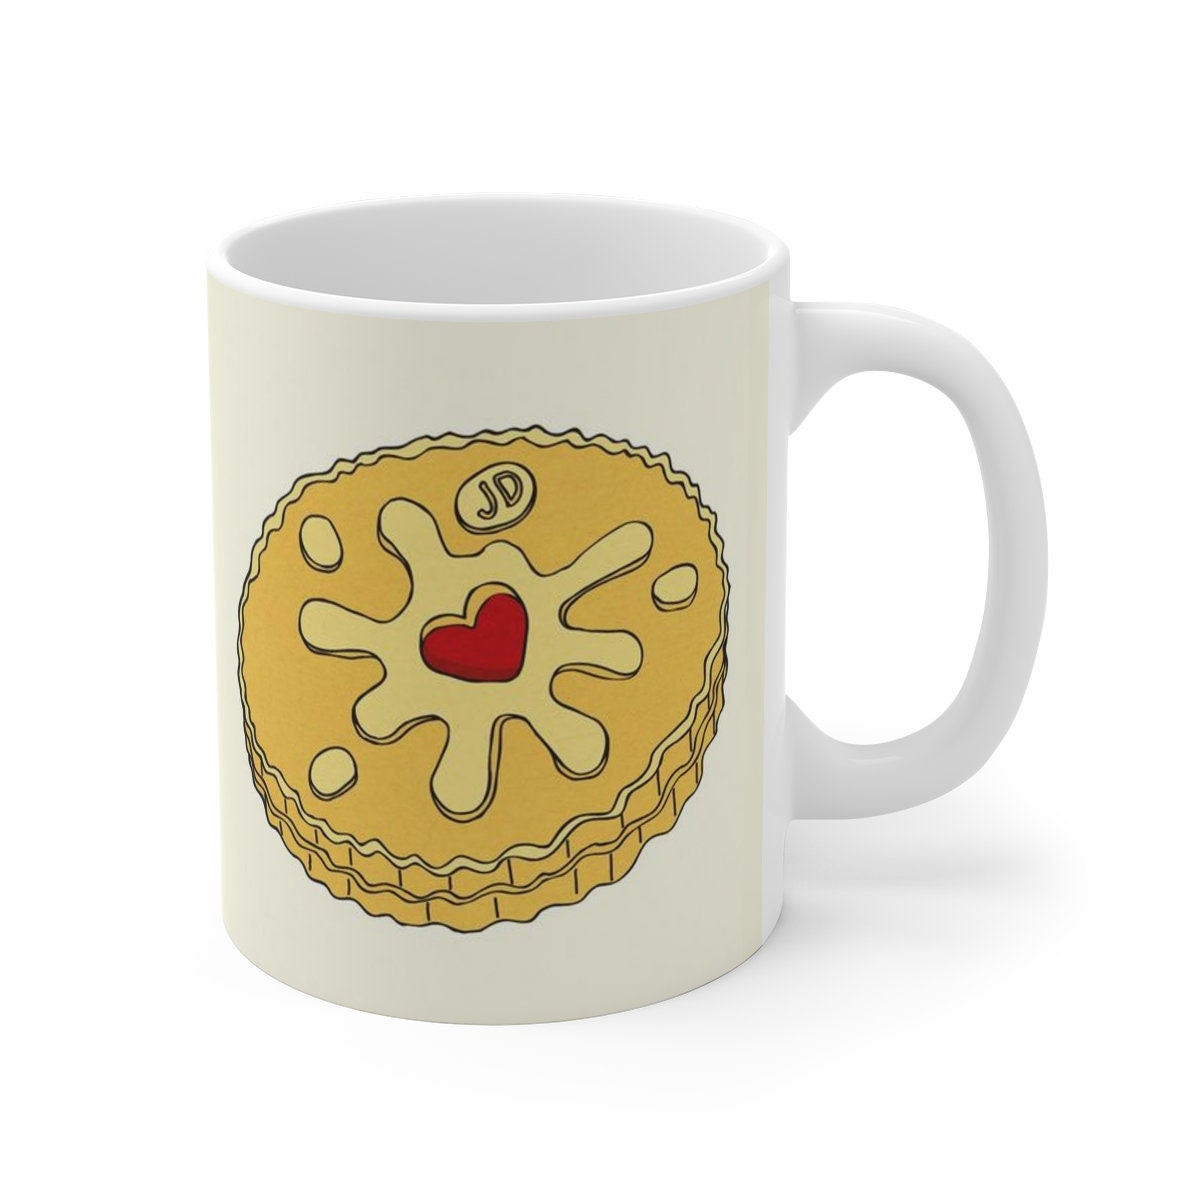 Jammy Dodger British Biscuit Coffee Mug by evannave